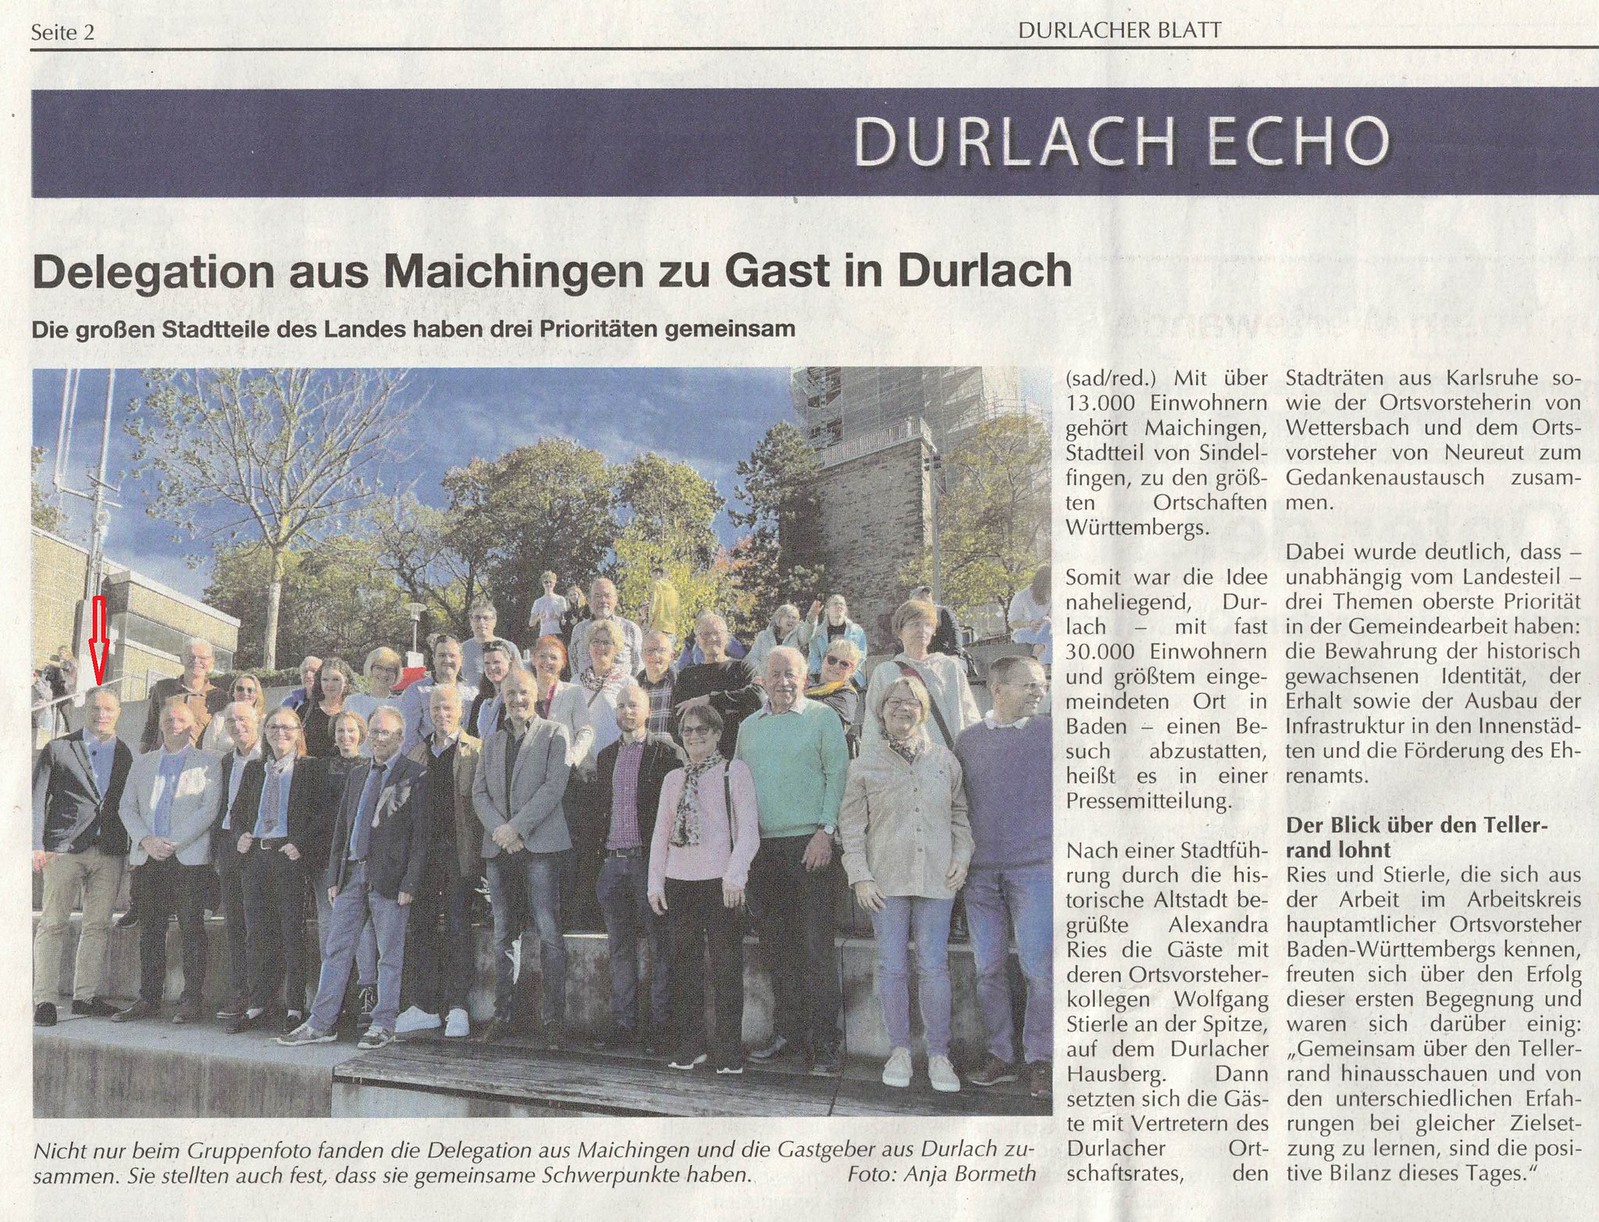 Durlach ist "die Mutter" von Karlsruhe! Gerne kam ich da als Karlsruher Stadtrat zur Begrüßung der Kollegen aus Maichingen/Sindelfingen auf den Turmberg. (Durlacher Blatt, 11.11.2022)